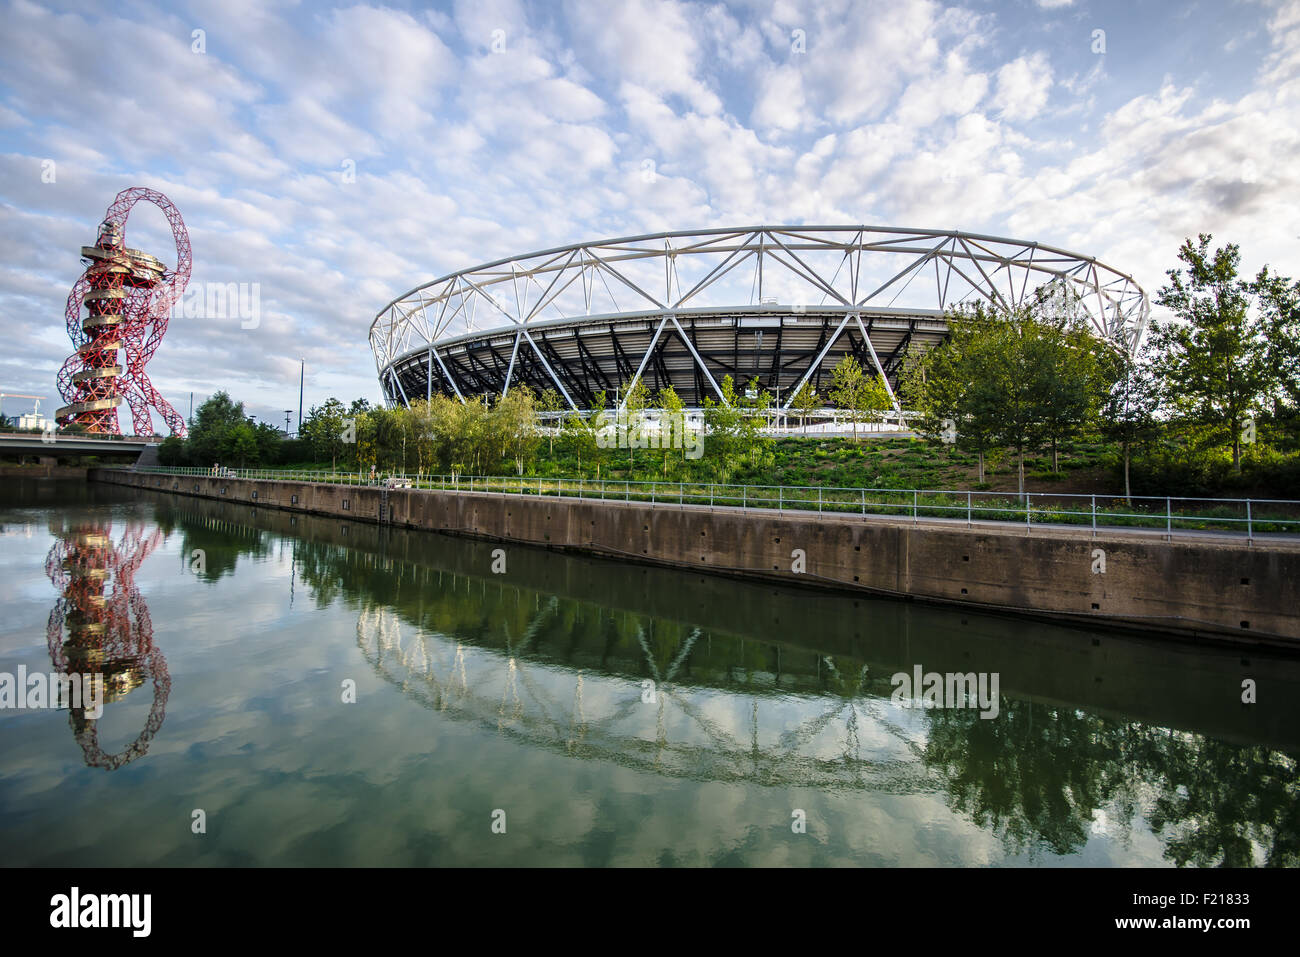 Parc olympique Queen Elizabeth, Londres, stade, tour et canal britanniques. Construit pour les Jeux Olympiques de Londres 2012. Lieu Banque D'Images